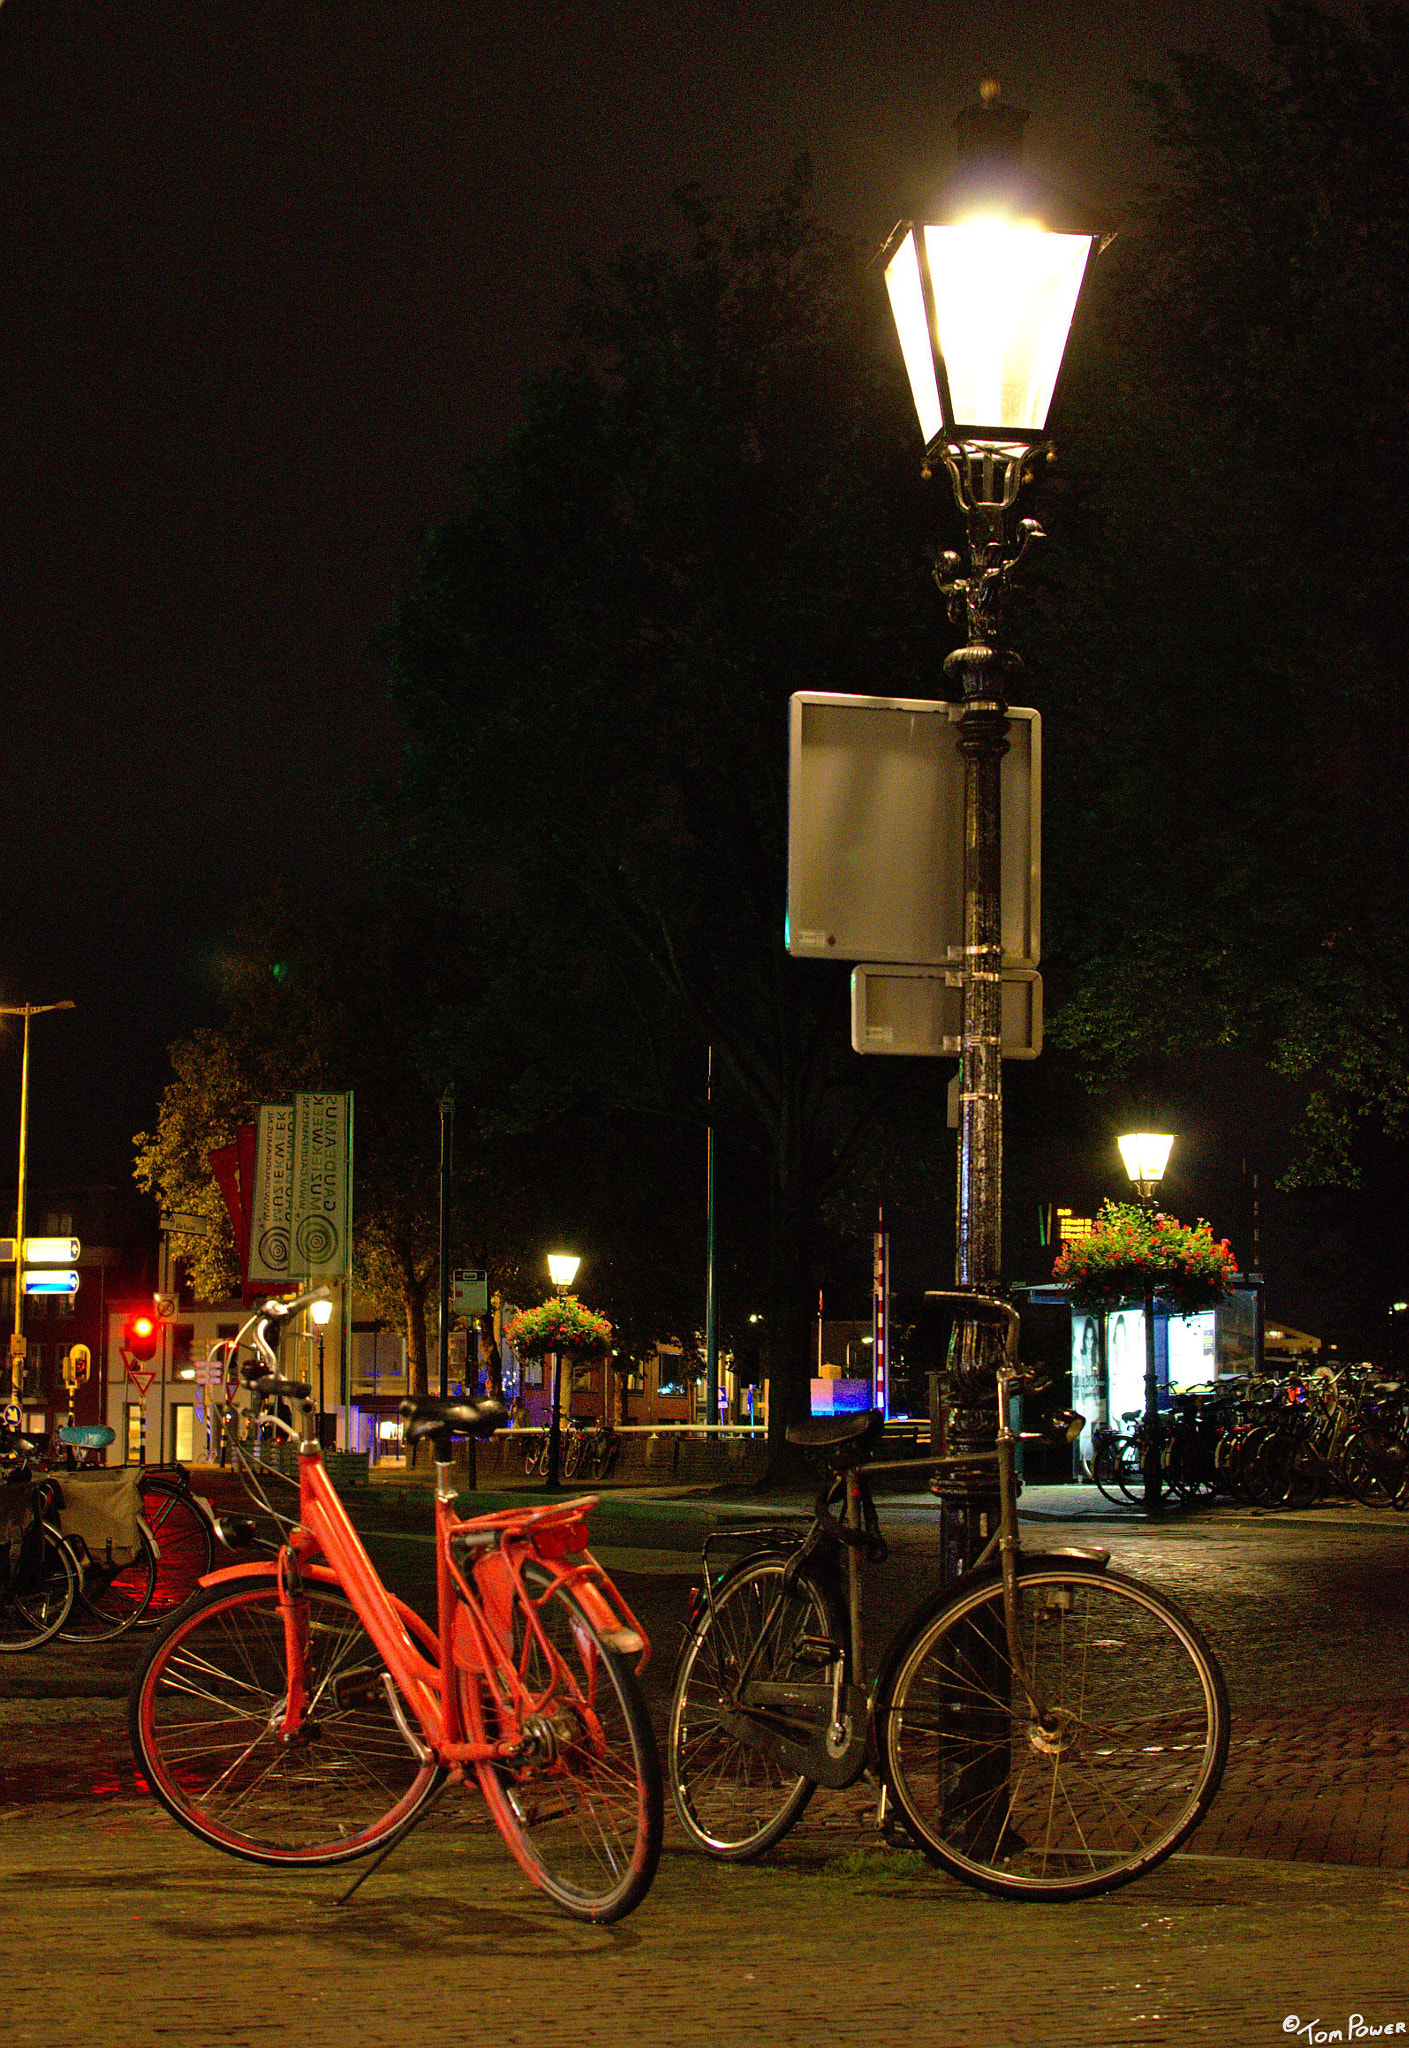 Nikon D7000 sample photo. Utrecht at night photography